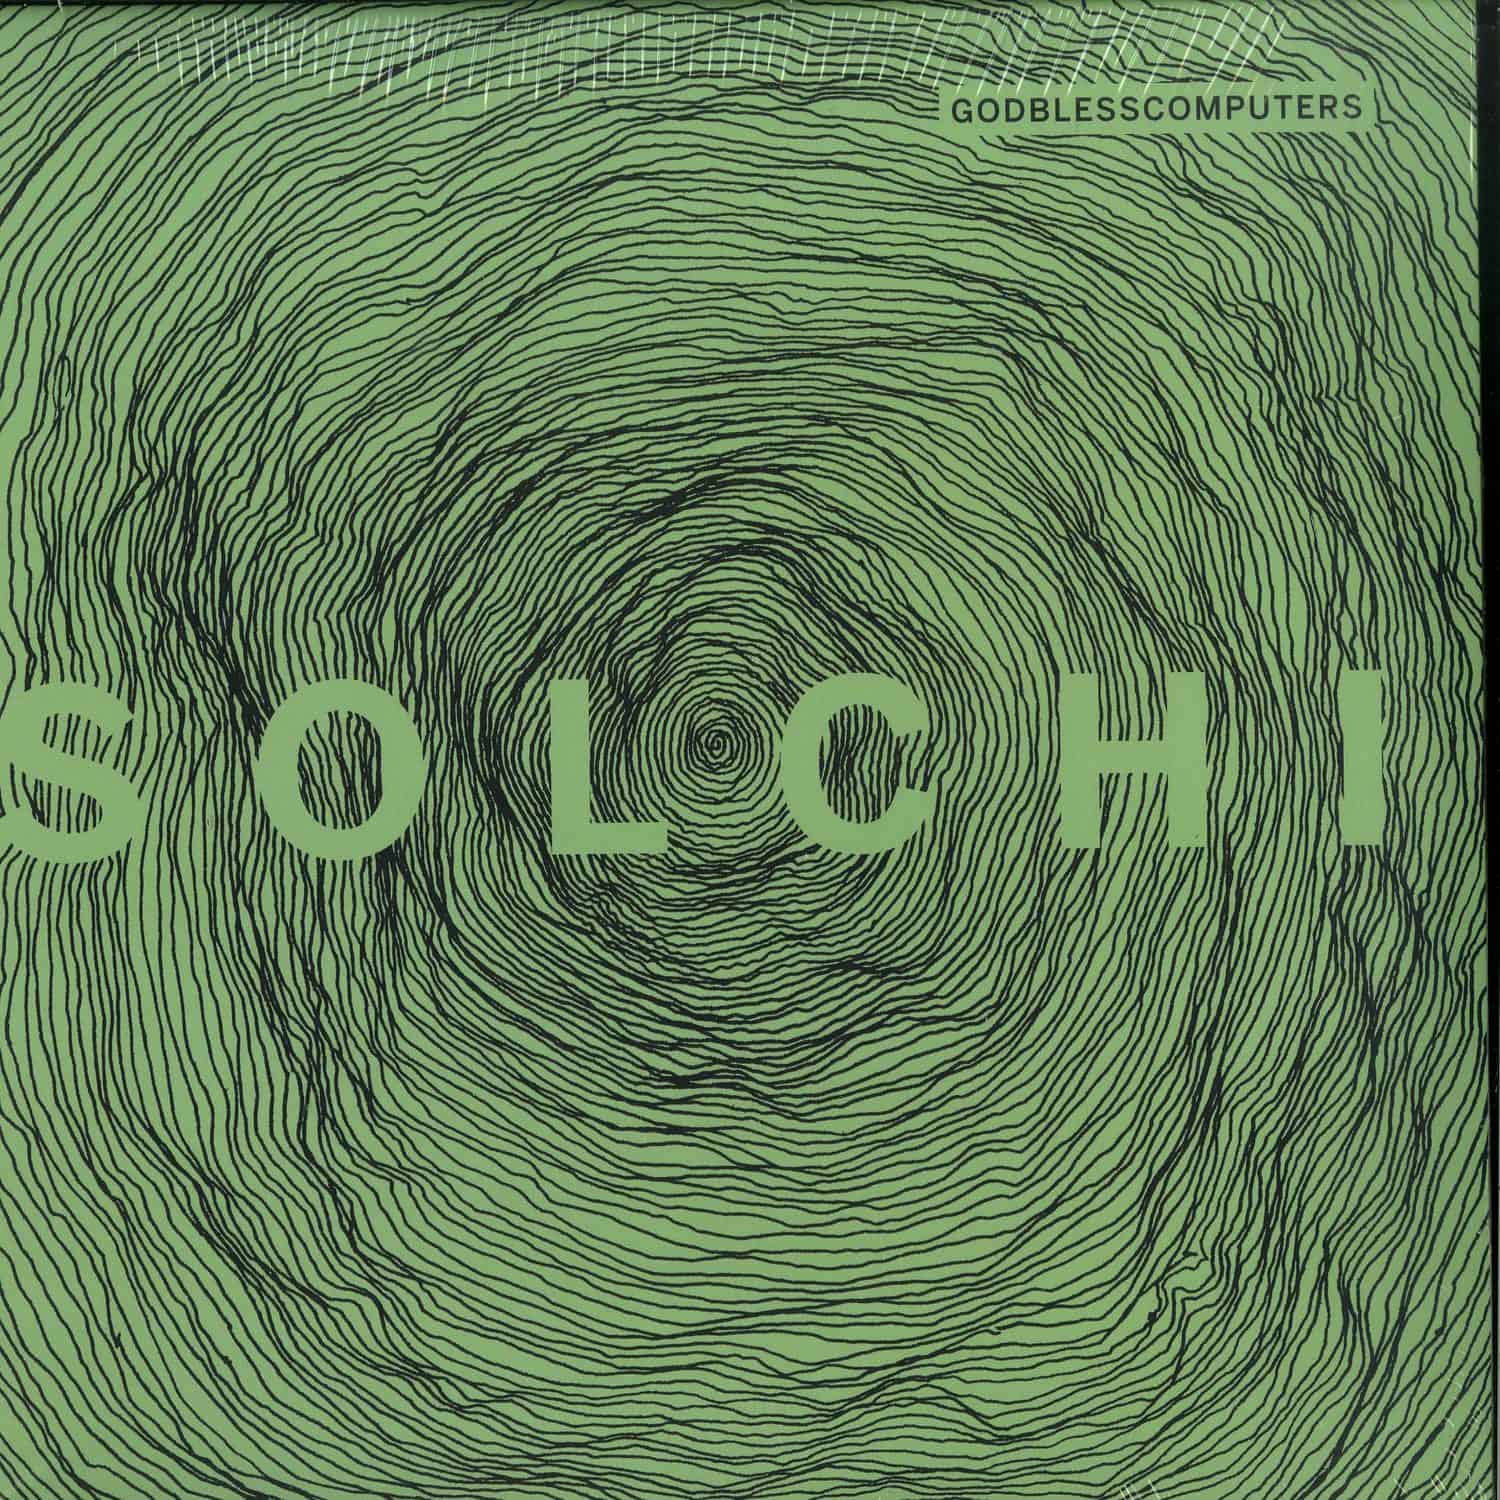 Godblesscomputers - SOLCHI 